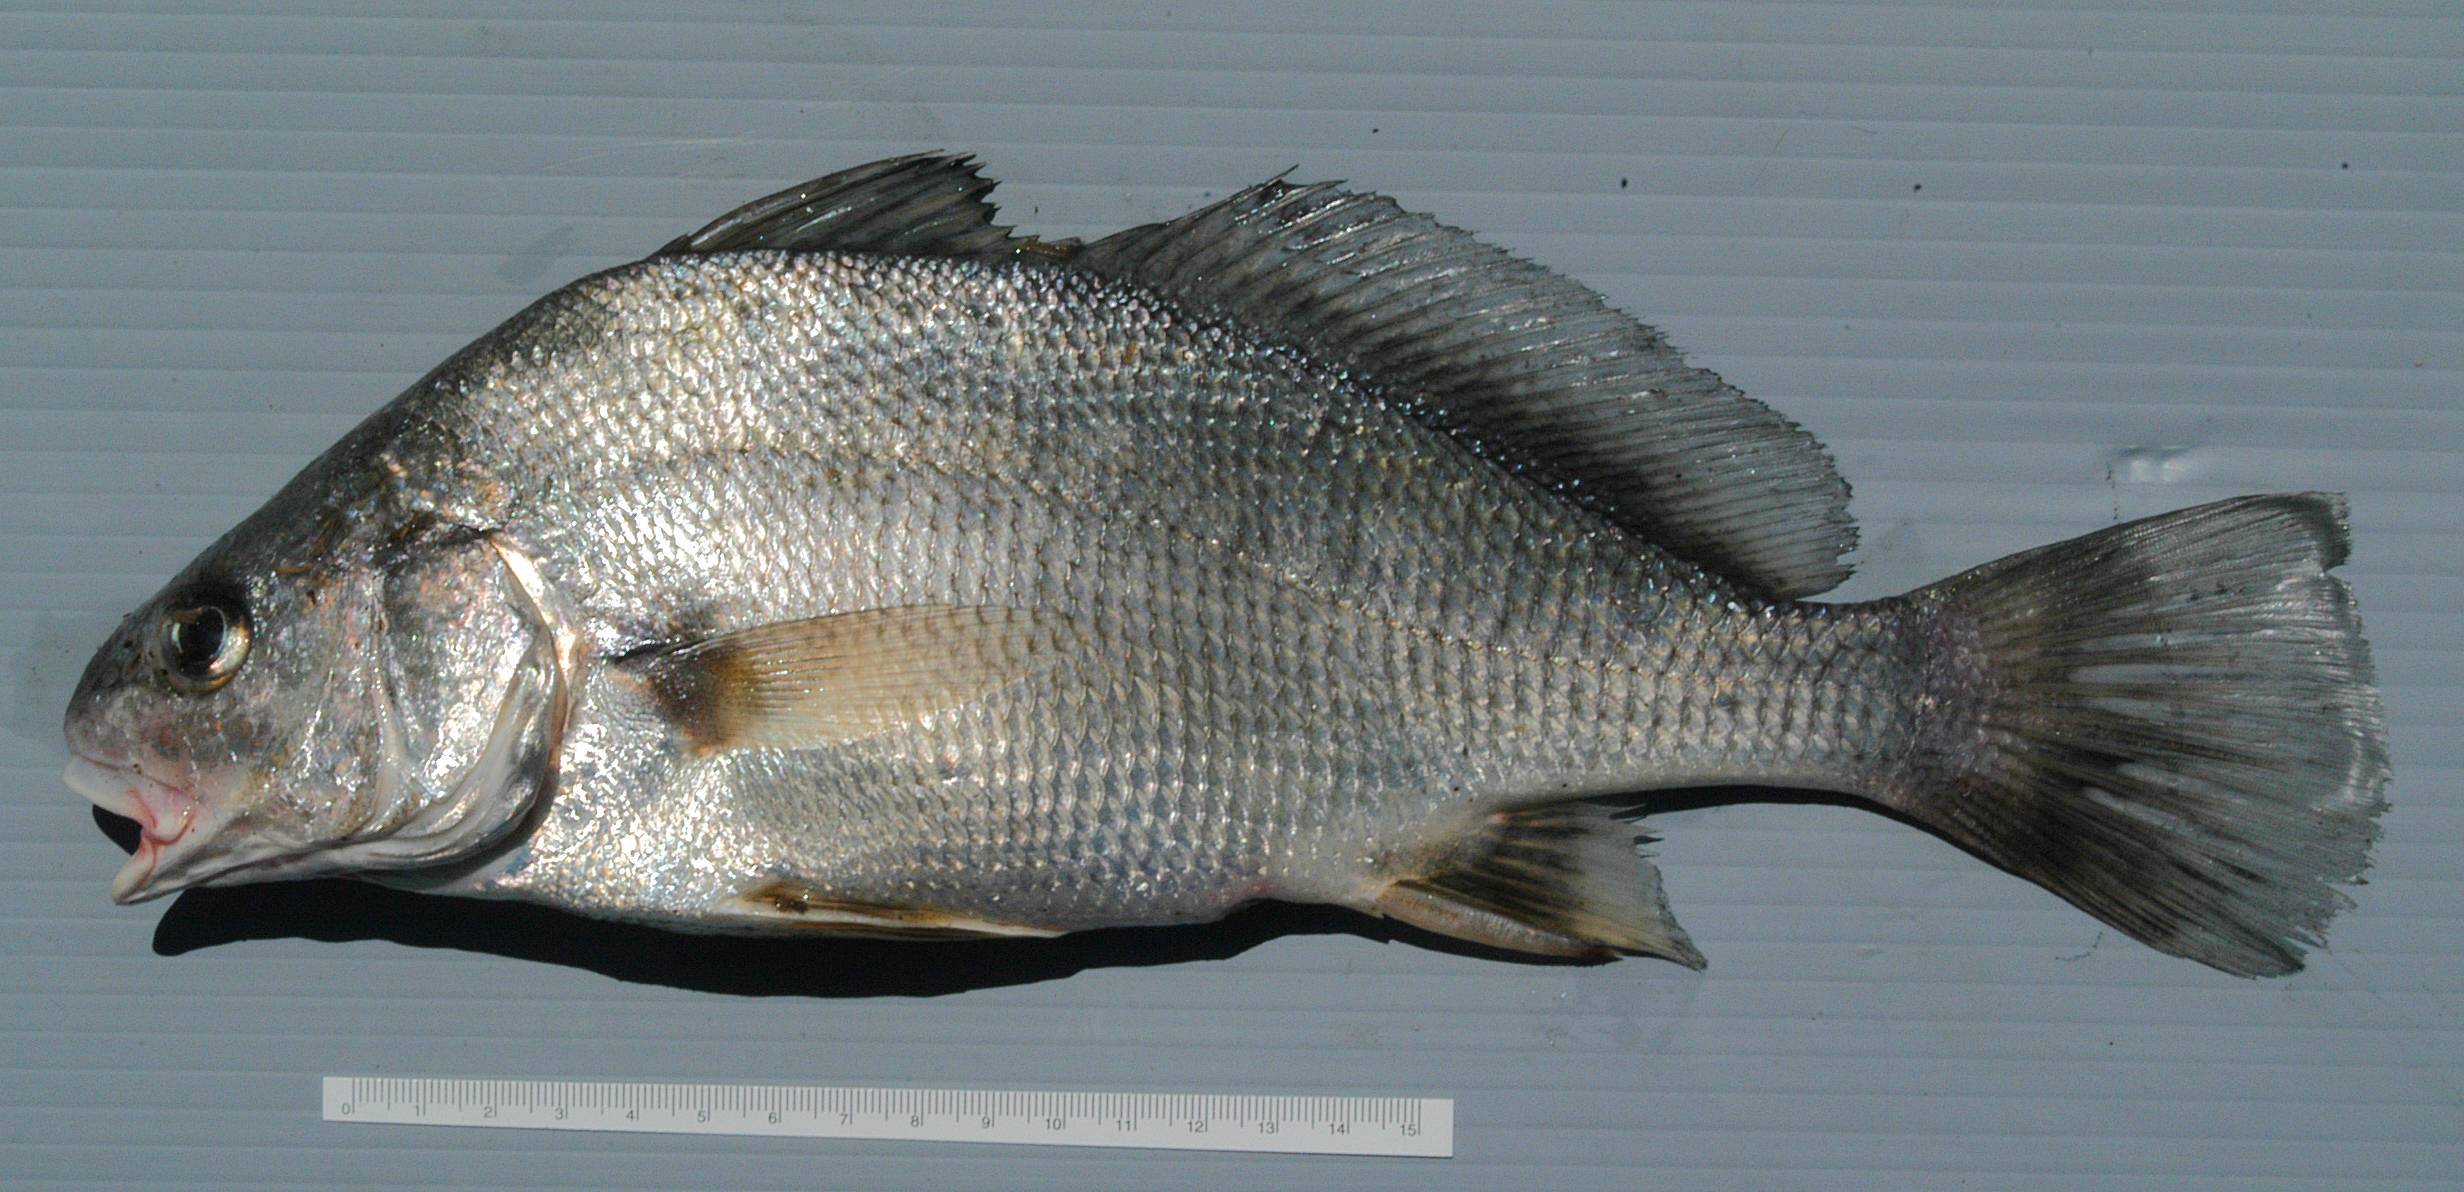 Горбыль песчаный фото и описание – каталог рыб, смотреть онлайн